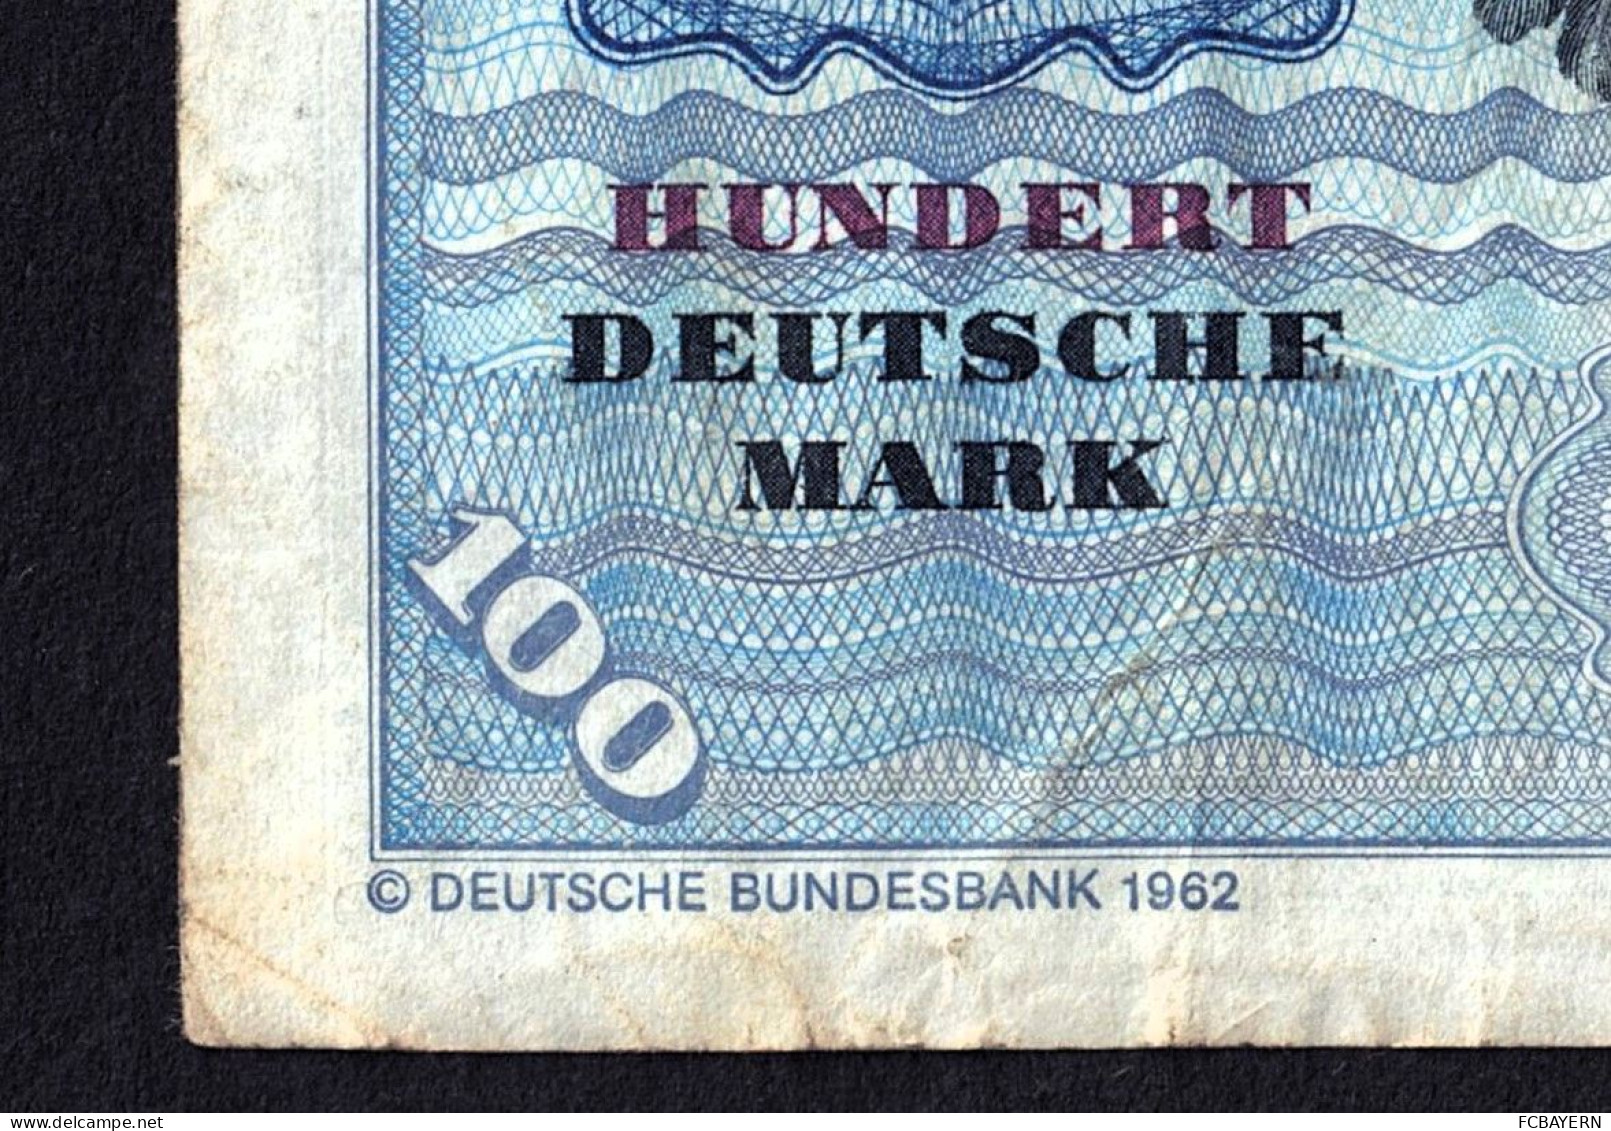 Deutsche Banknote 100 DM (NJ1685366Q) Stark Gebraucht - Siehe Fotos - 100 DM